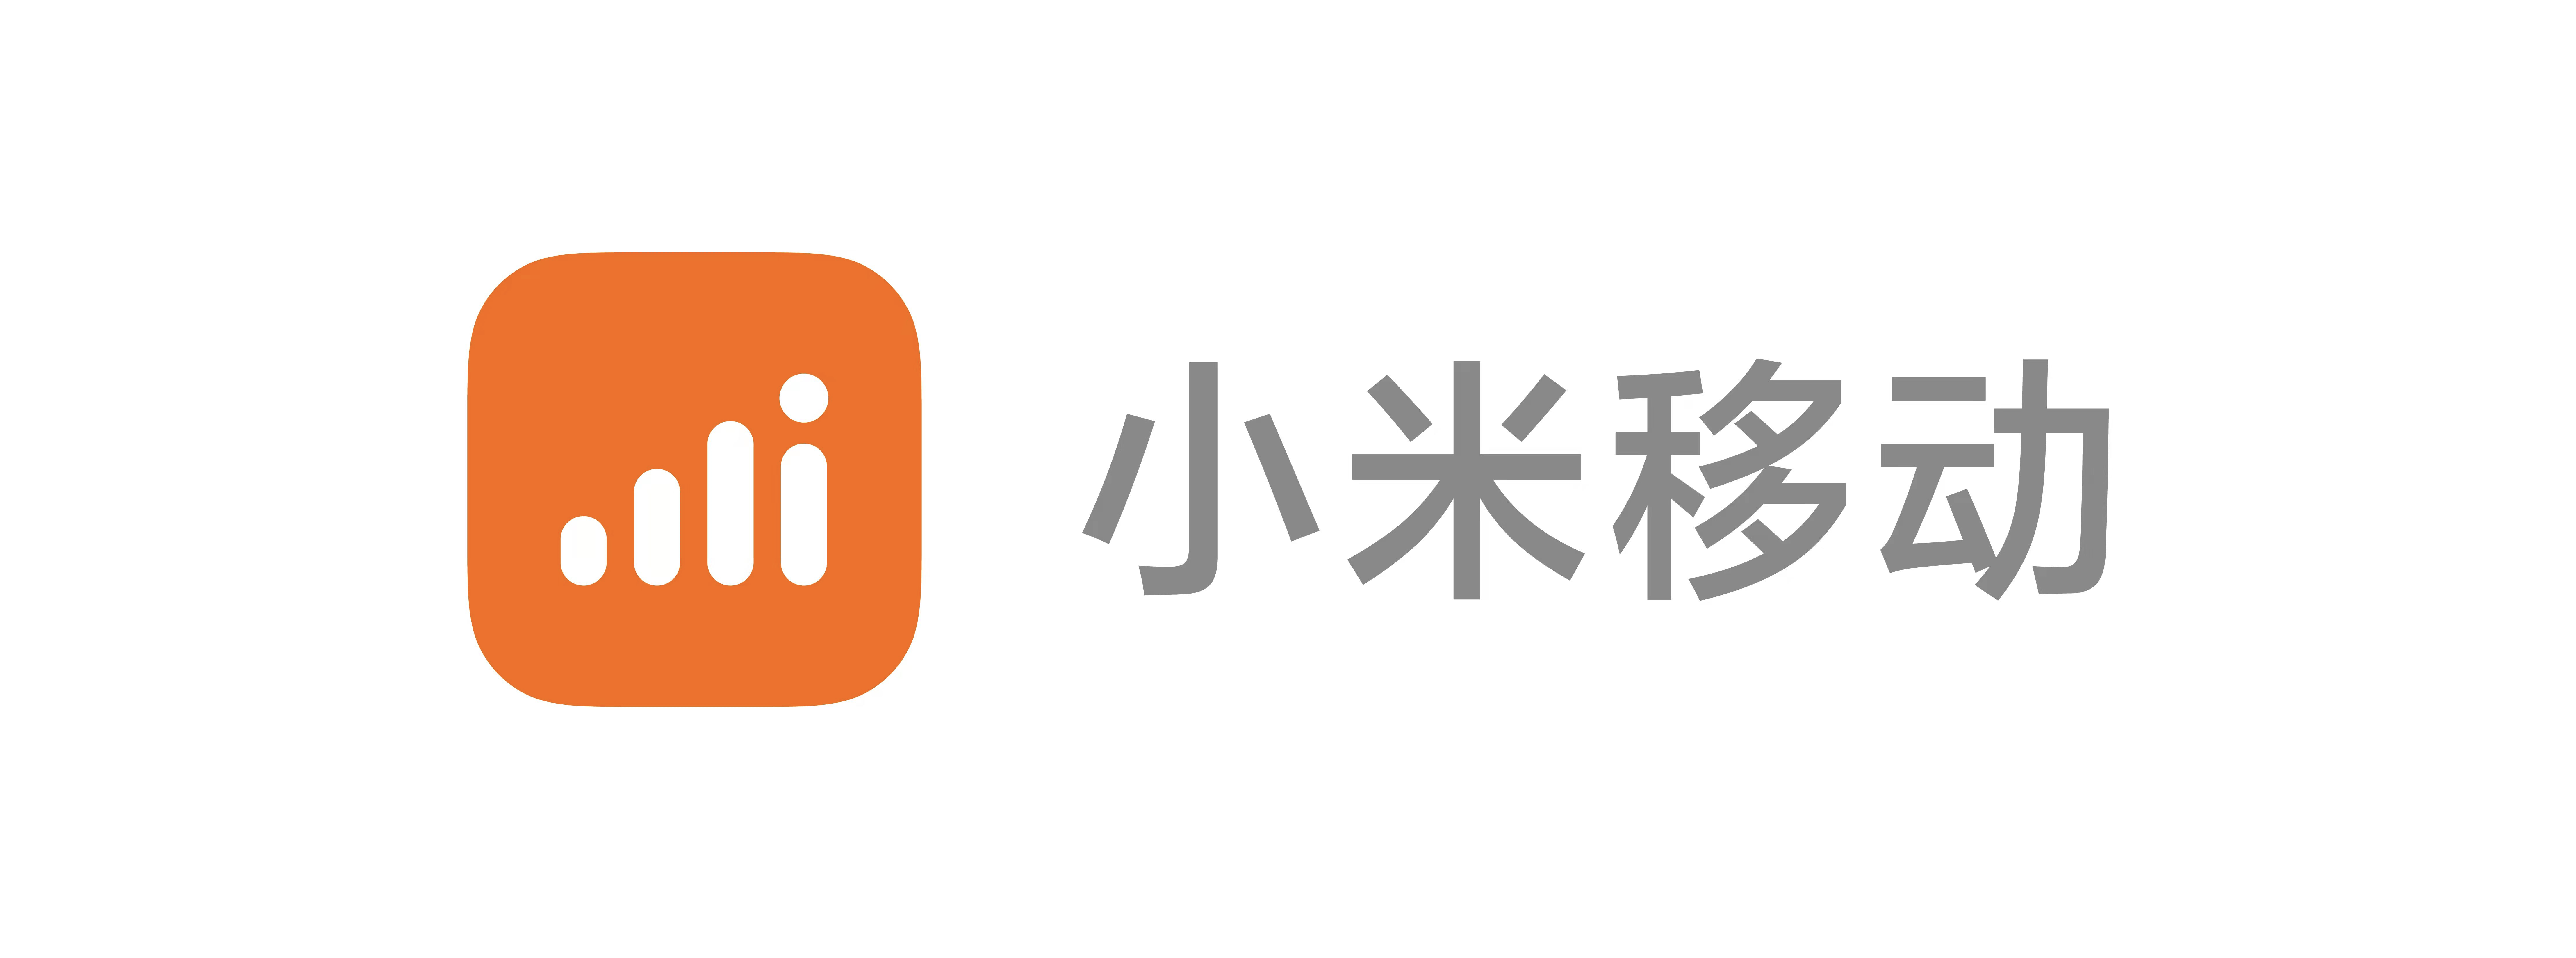 小米新logo更新图片